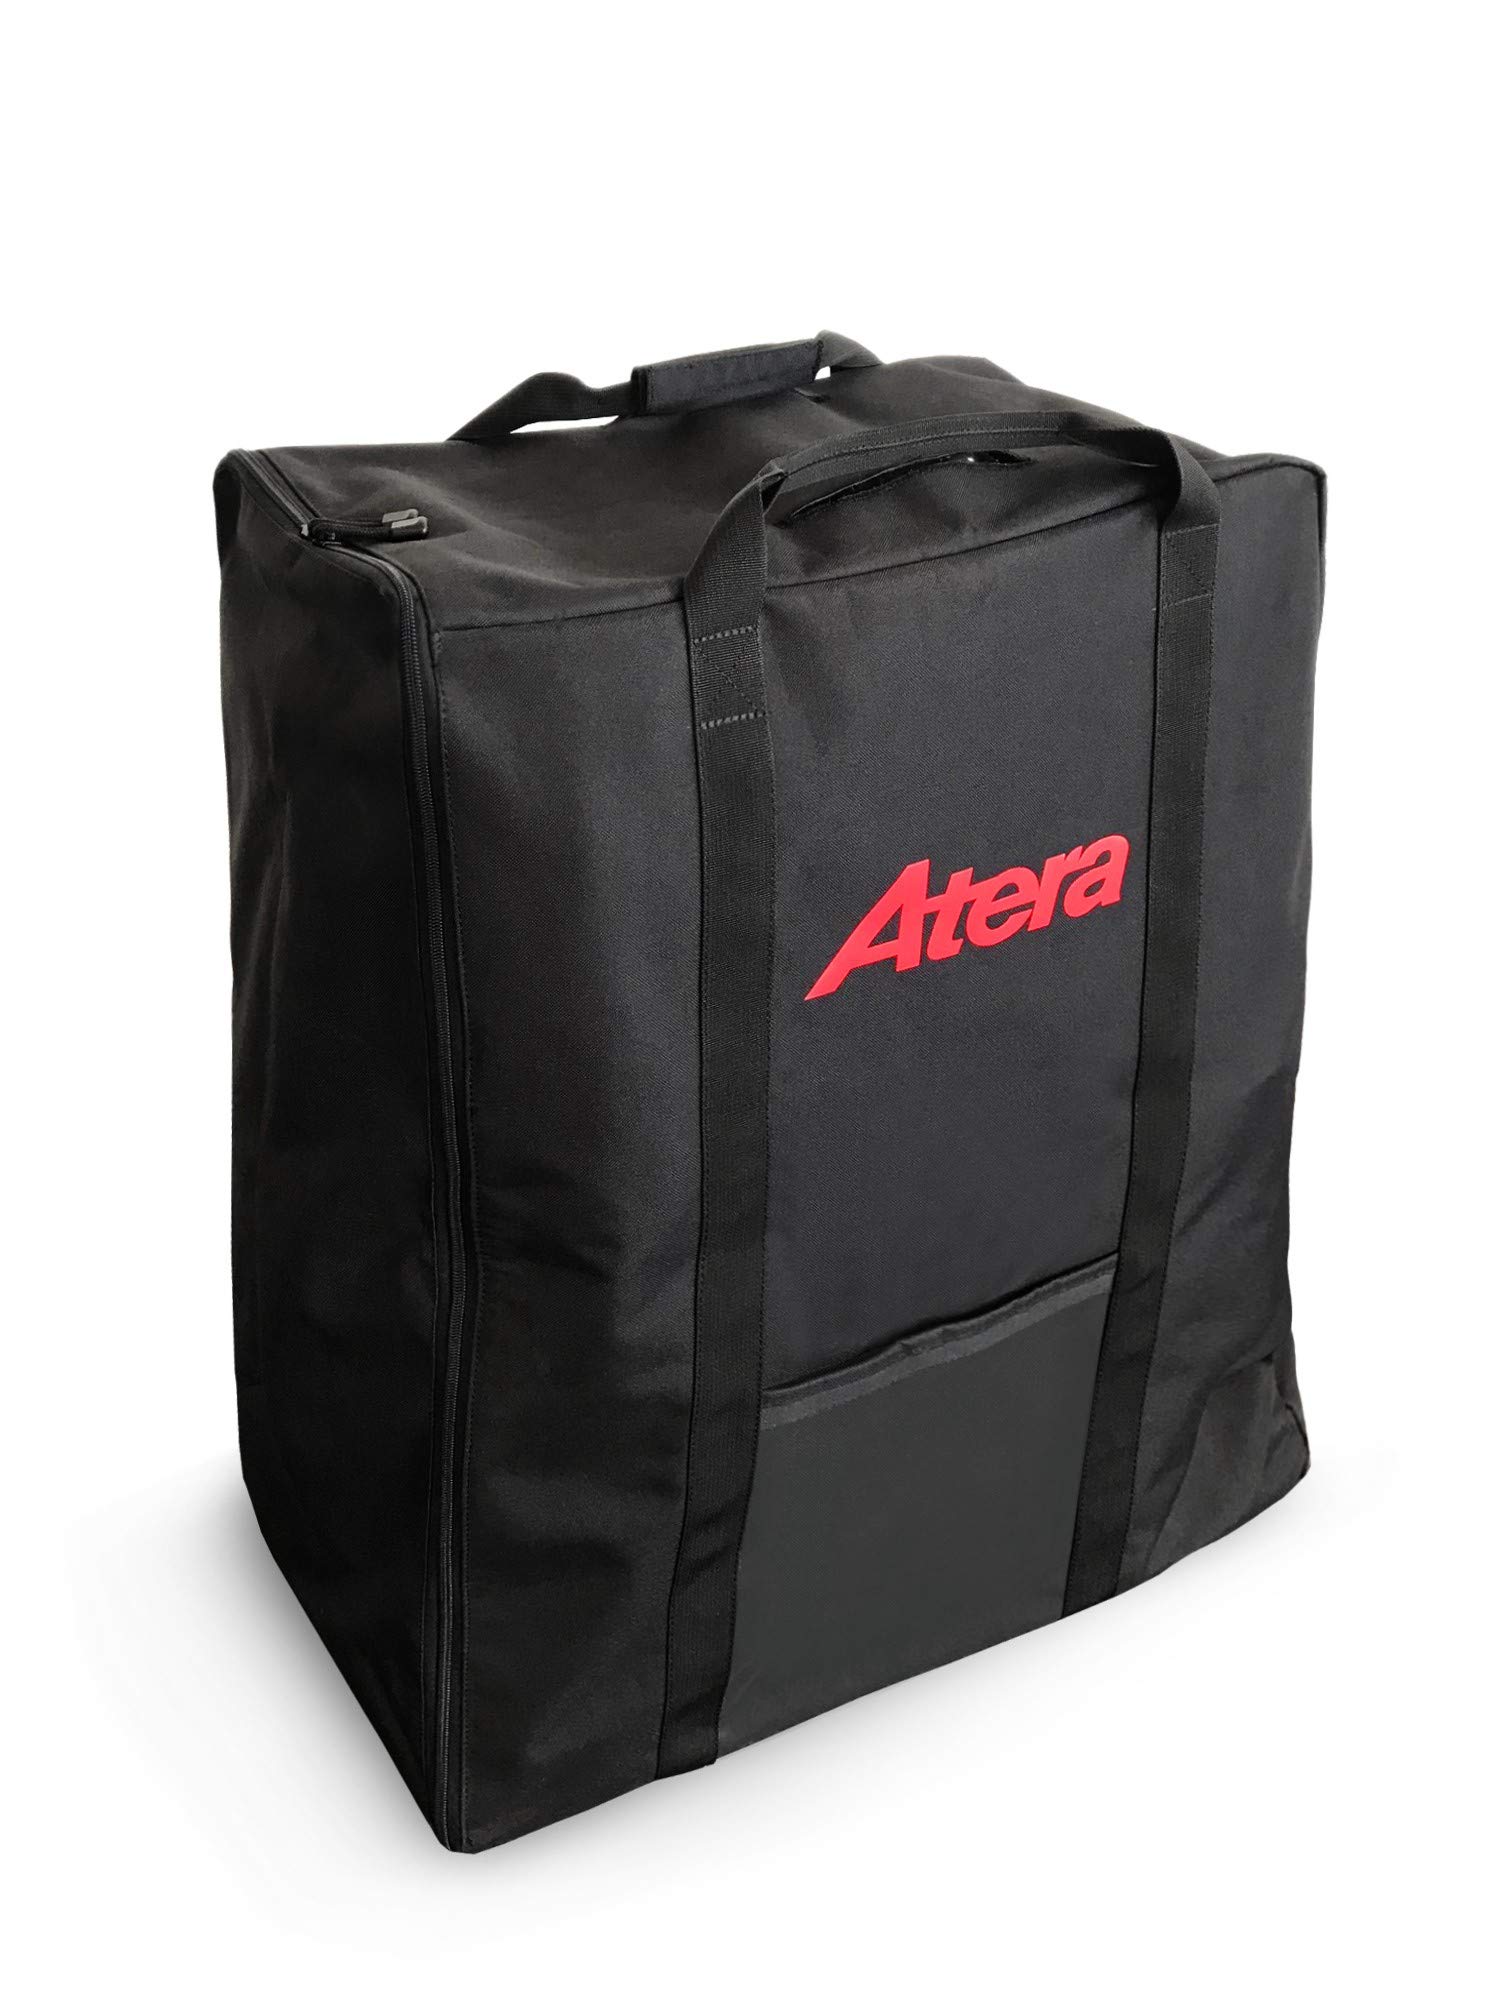 Atera 022783 Transport-Tasche für PKW Fahrradträger Genio Pro Advanced, Auto-Kupplungsträger für 2 Fahrräder oder E-Bike von Atera